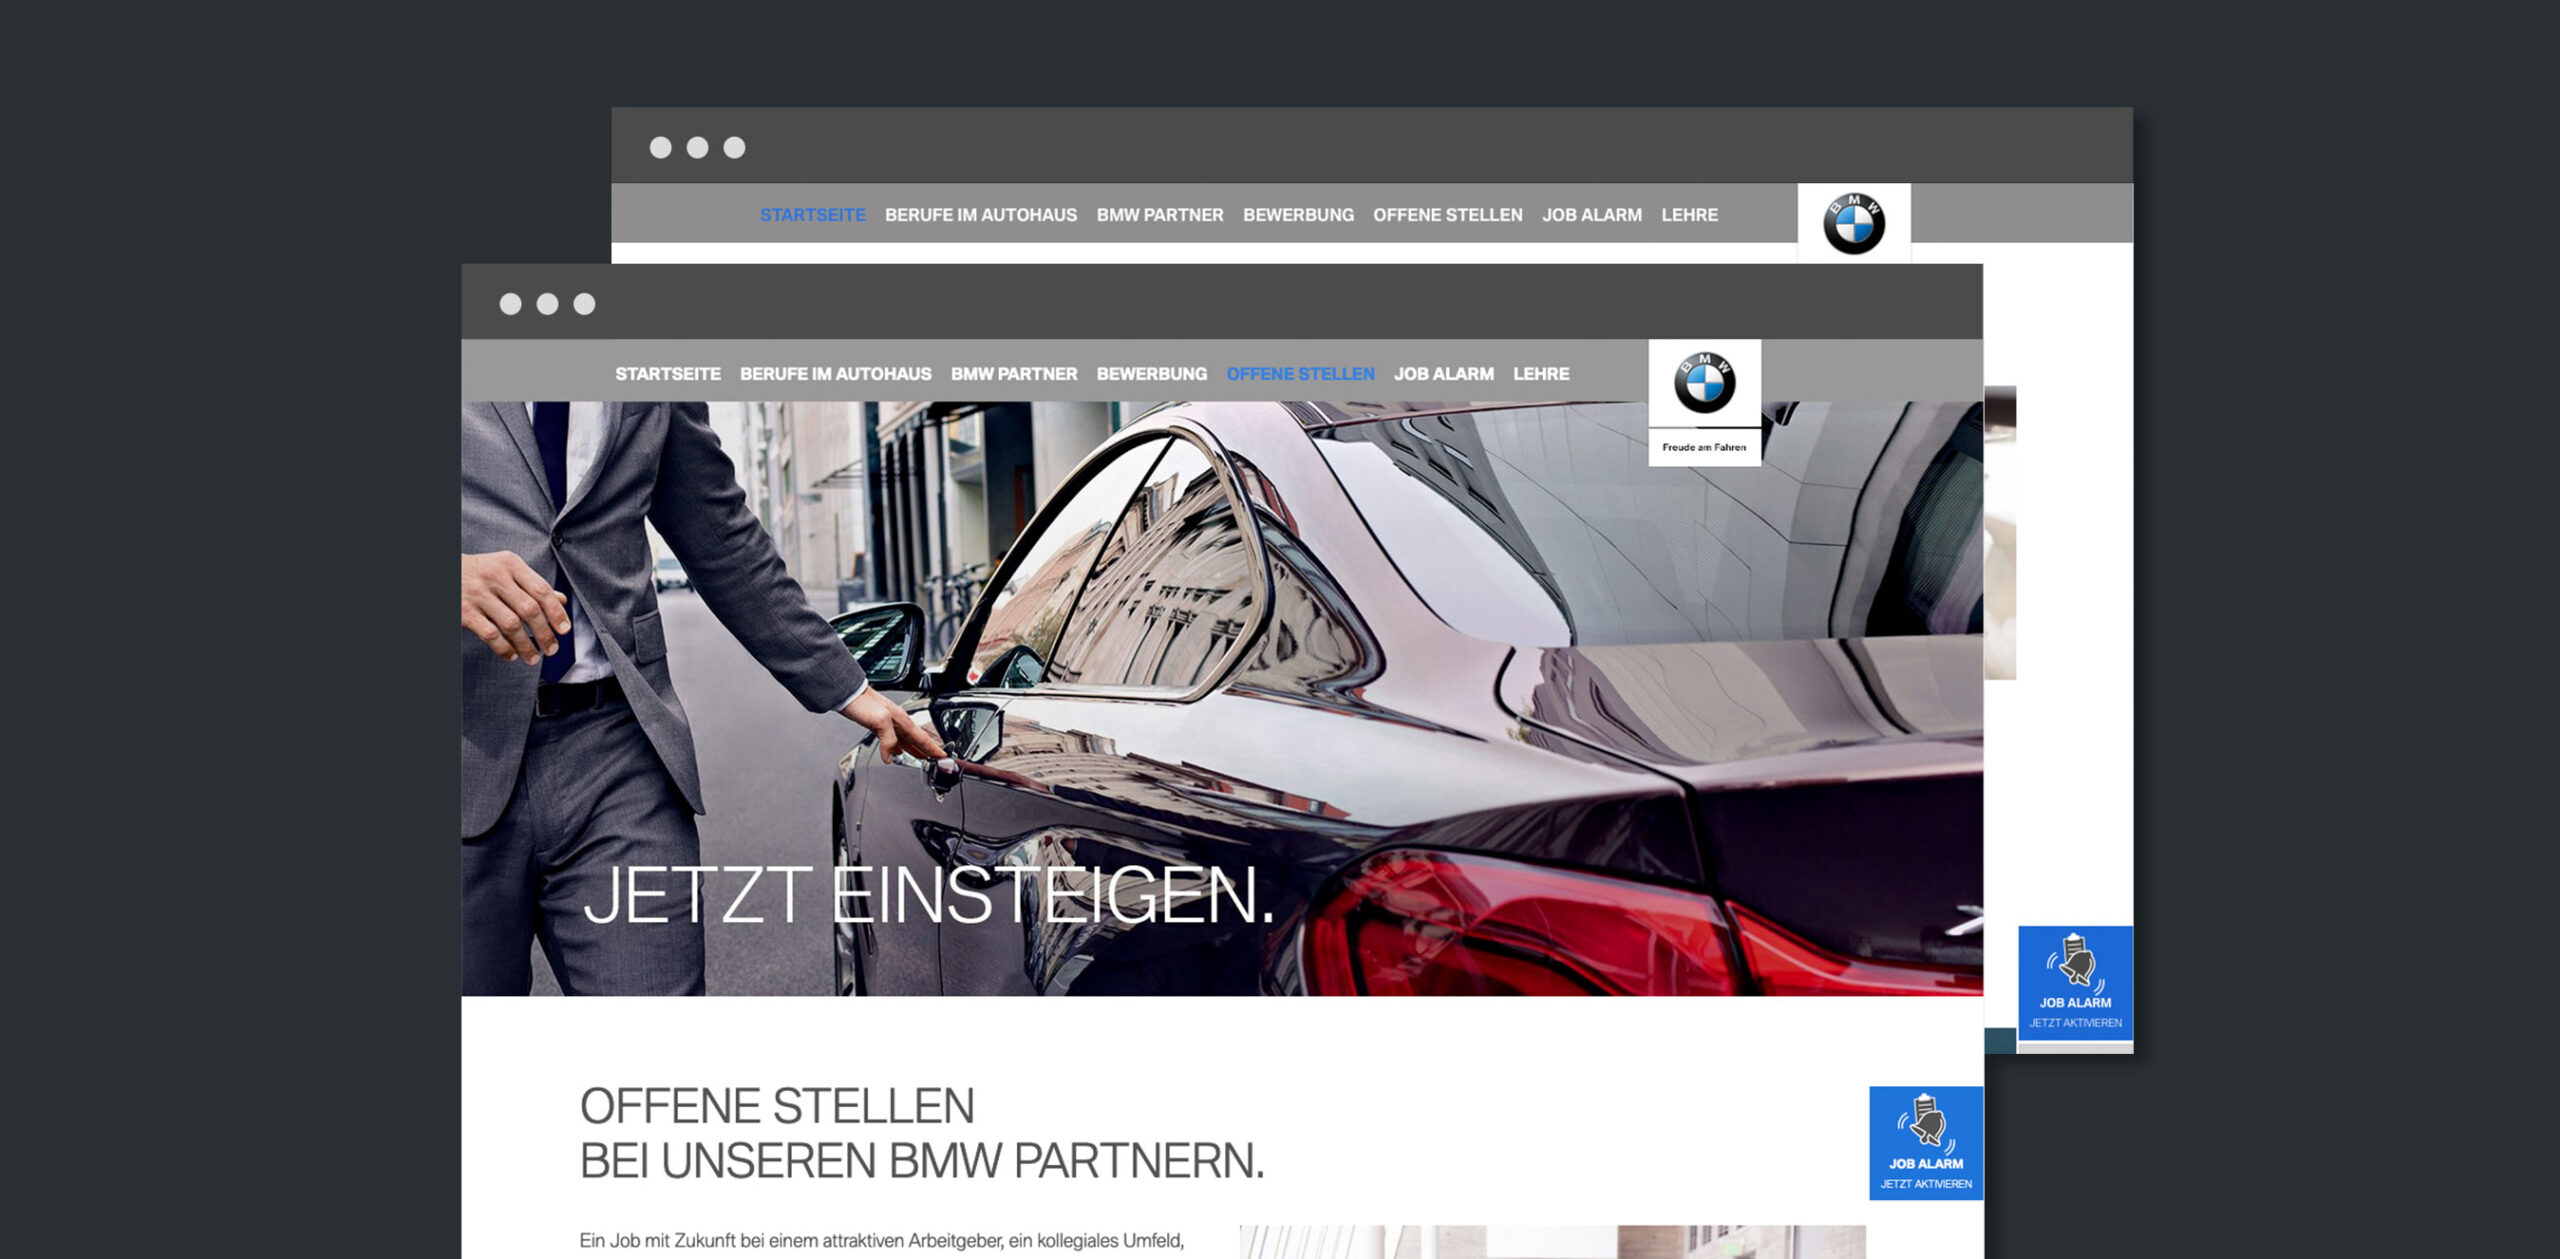 BMW-Karriere Website Relaunch-Unterseite-Karriere